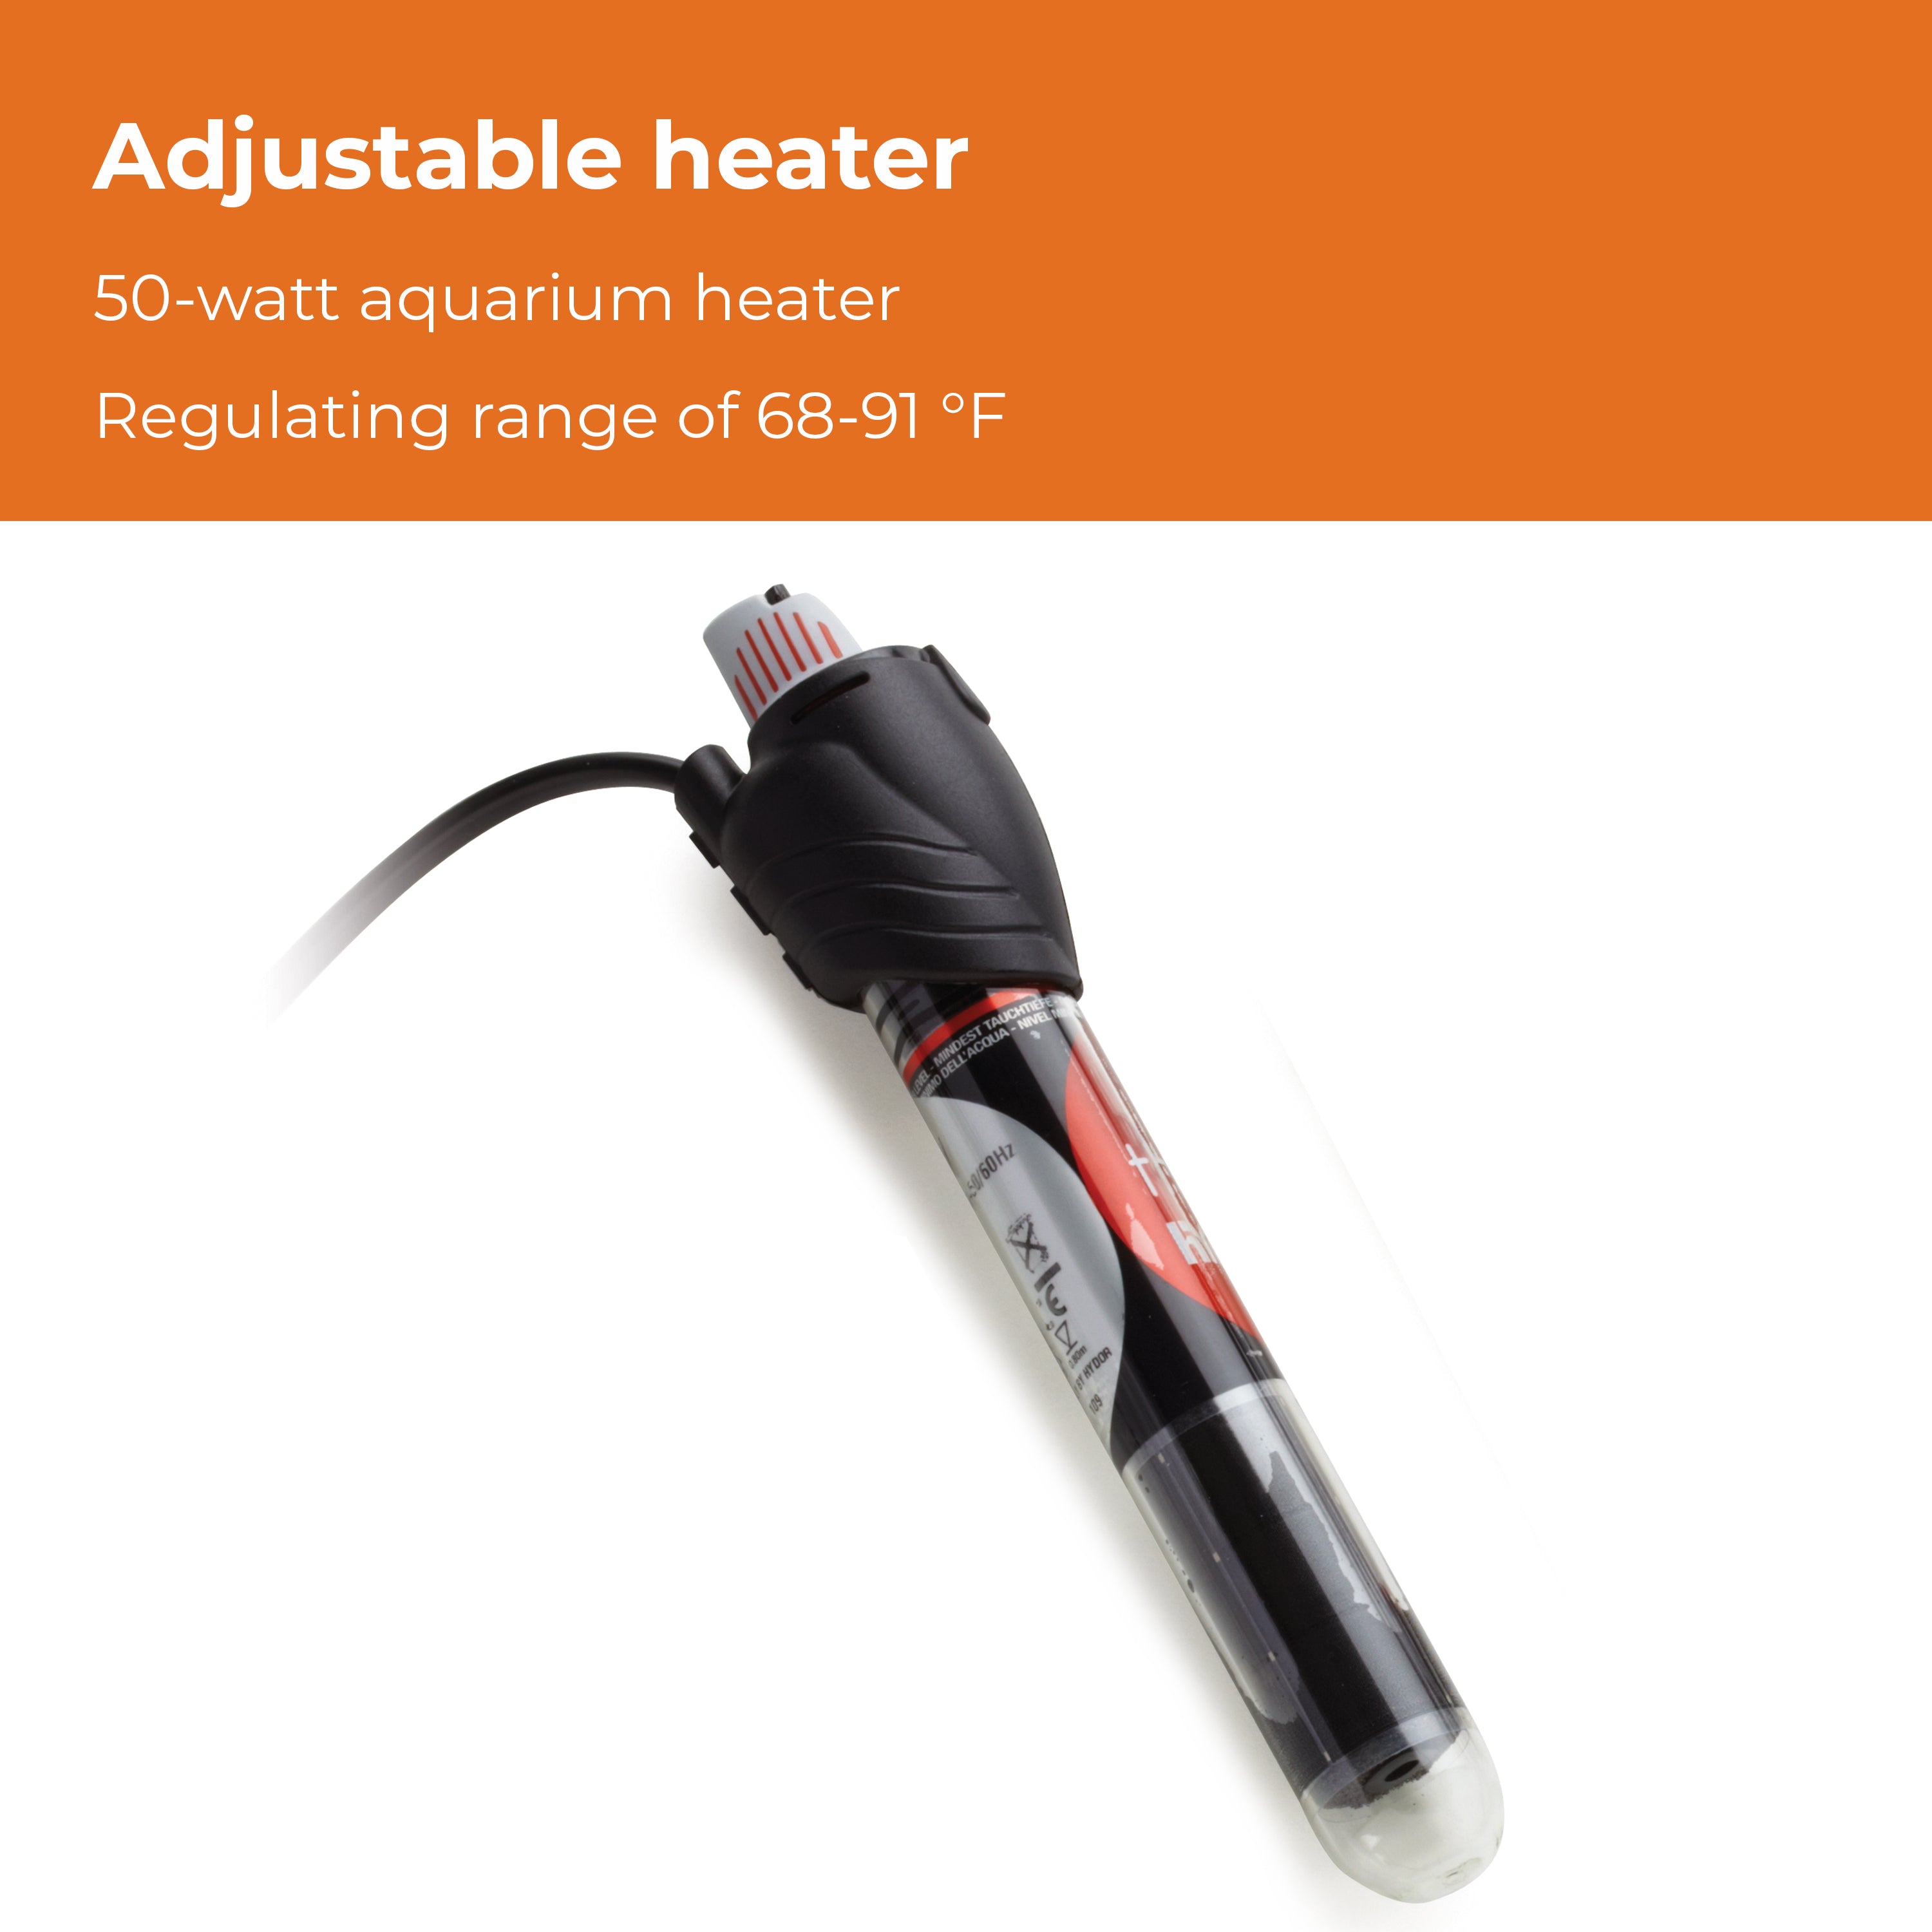 biOrb Aquarium Heater Pack - Adjustable heater